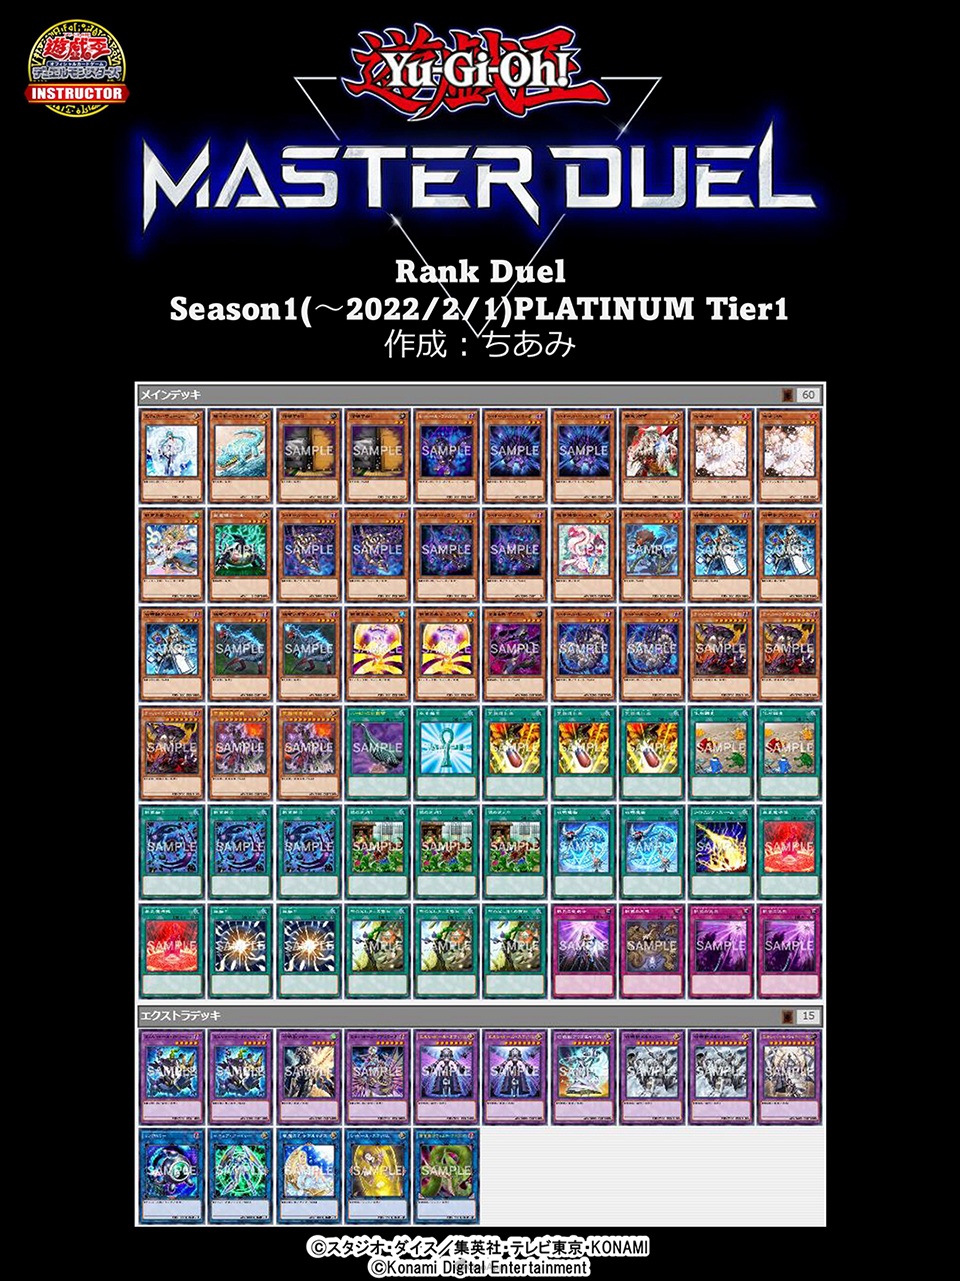 《遊戲王 Master Duel》突破千萬下載！Season 1白金牌組公開-第45張